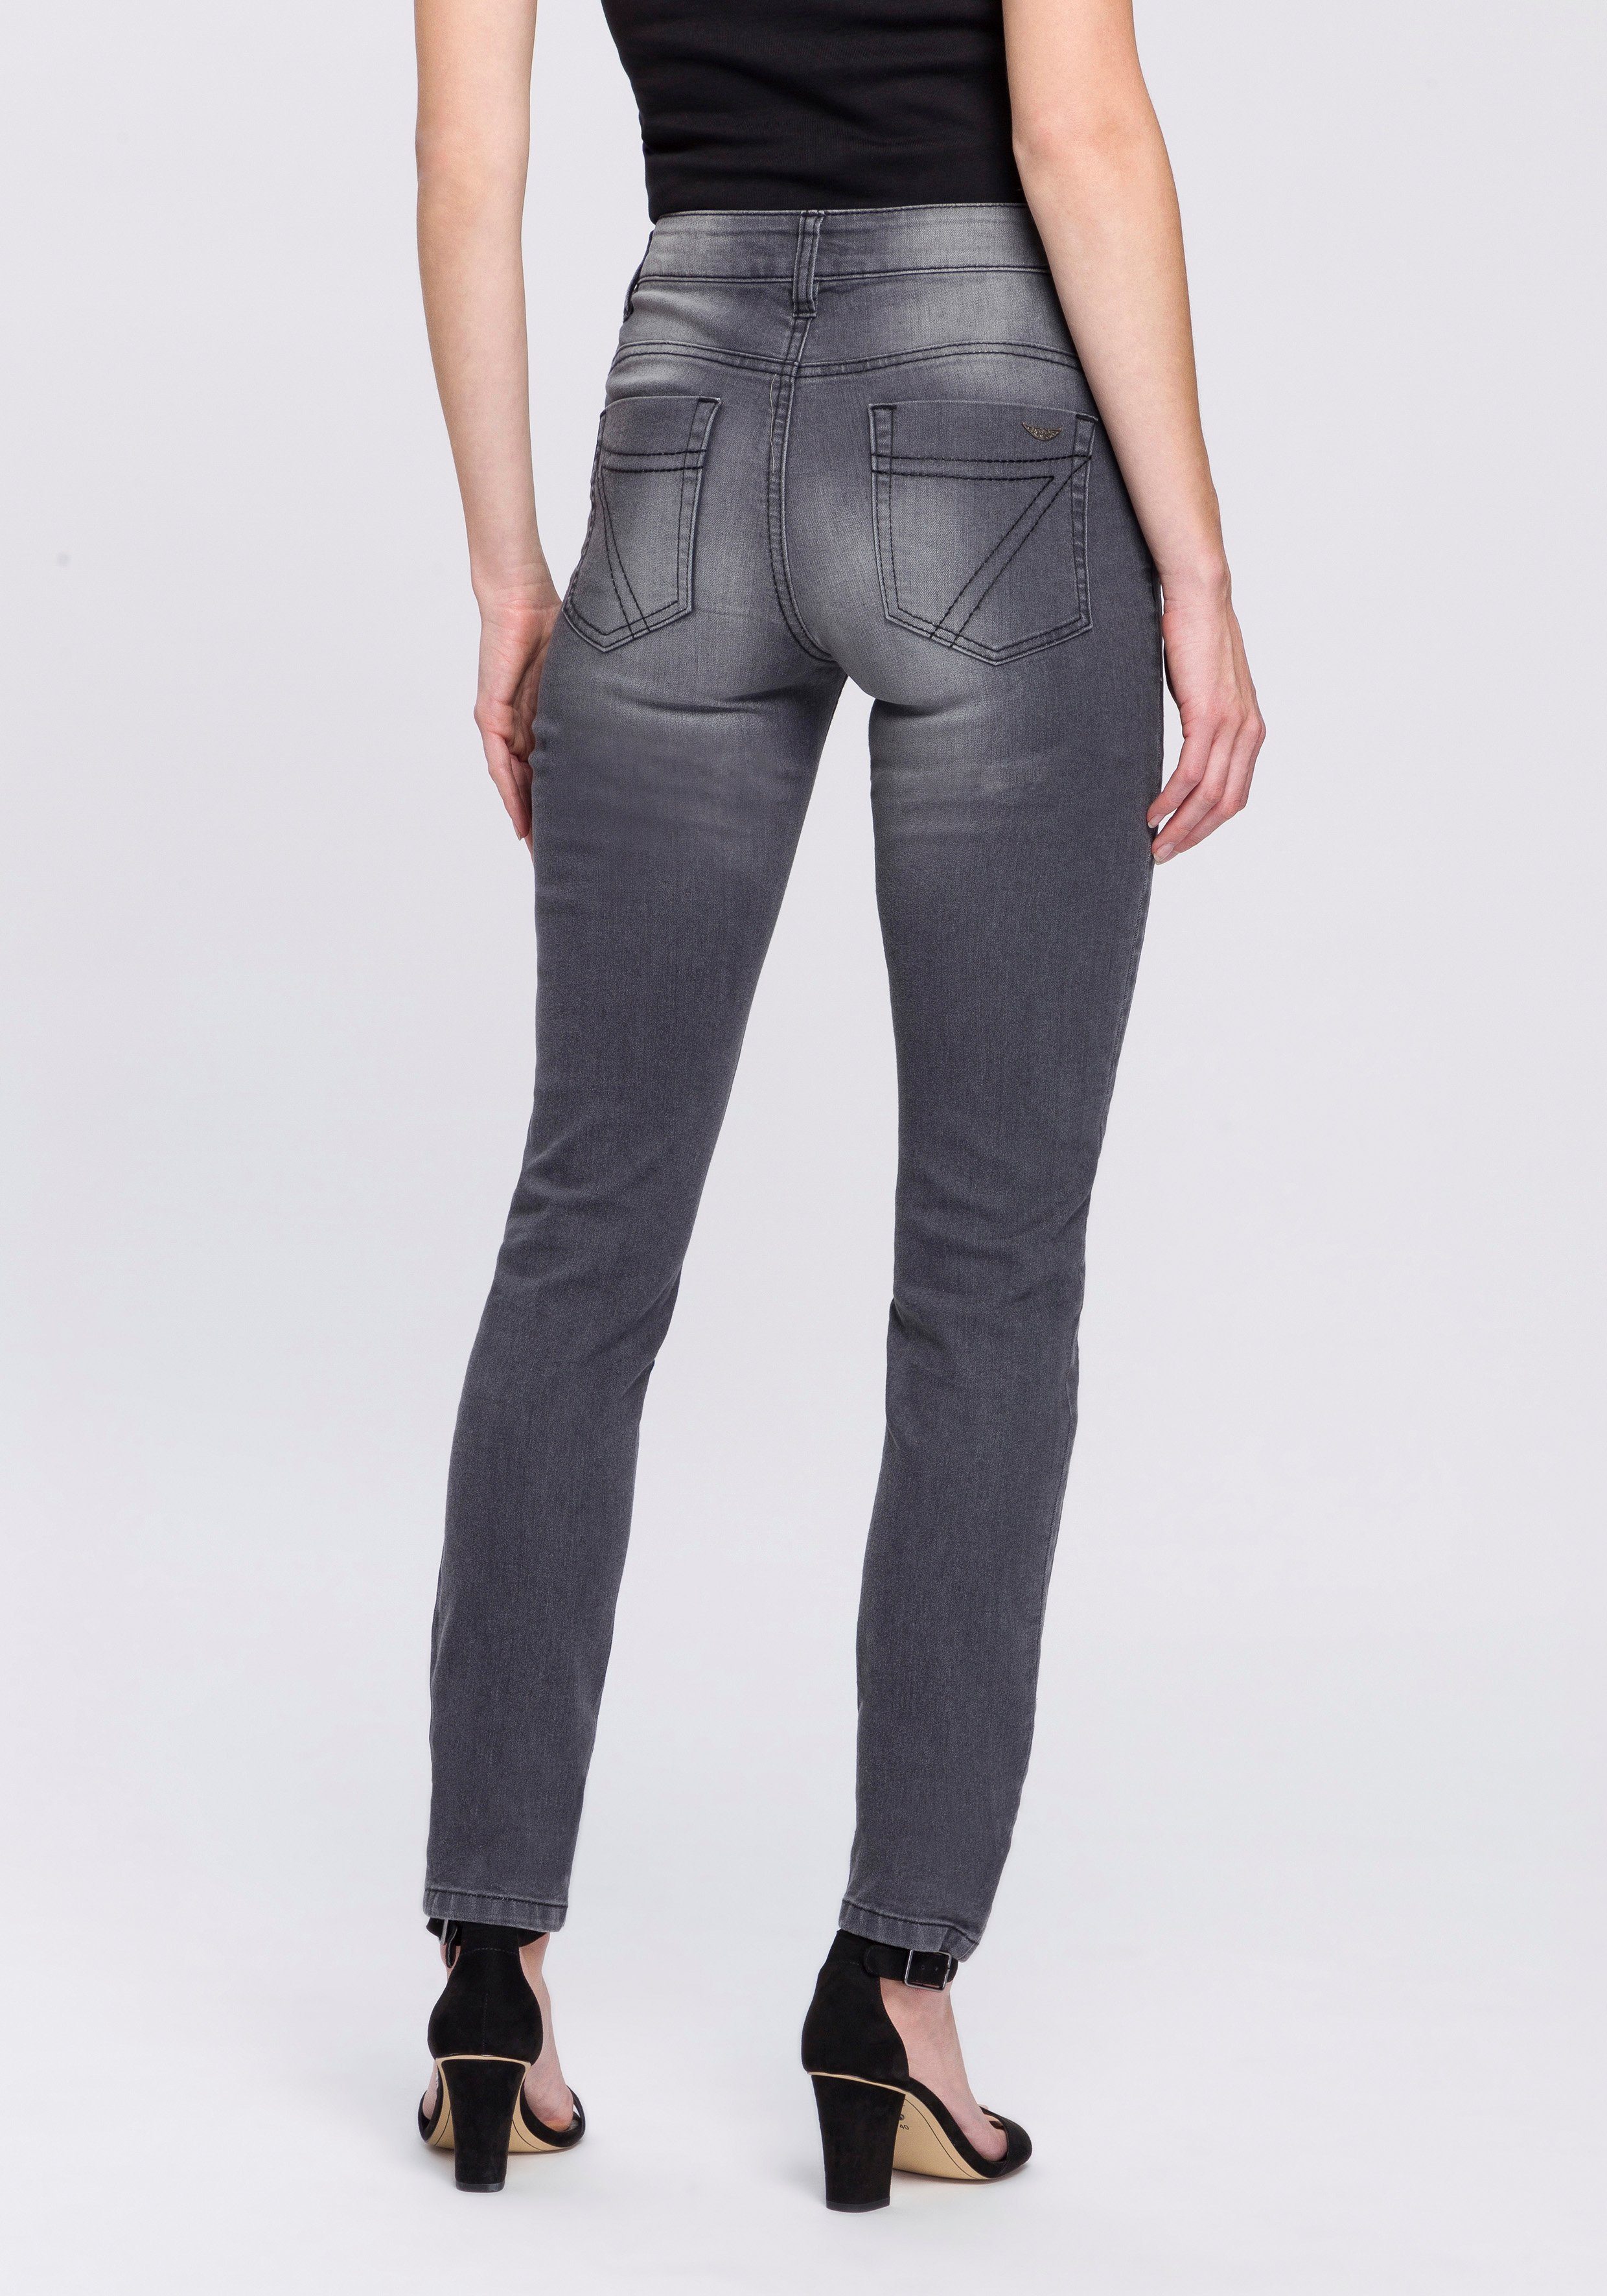 Arizona Slim-fit-Jeans Mit modischen - KOLLEKTION NEUE Nahtverläufen